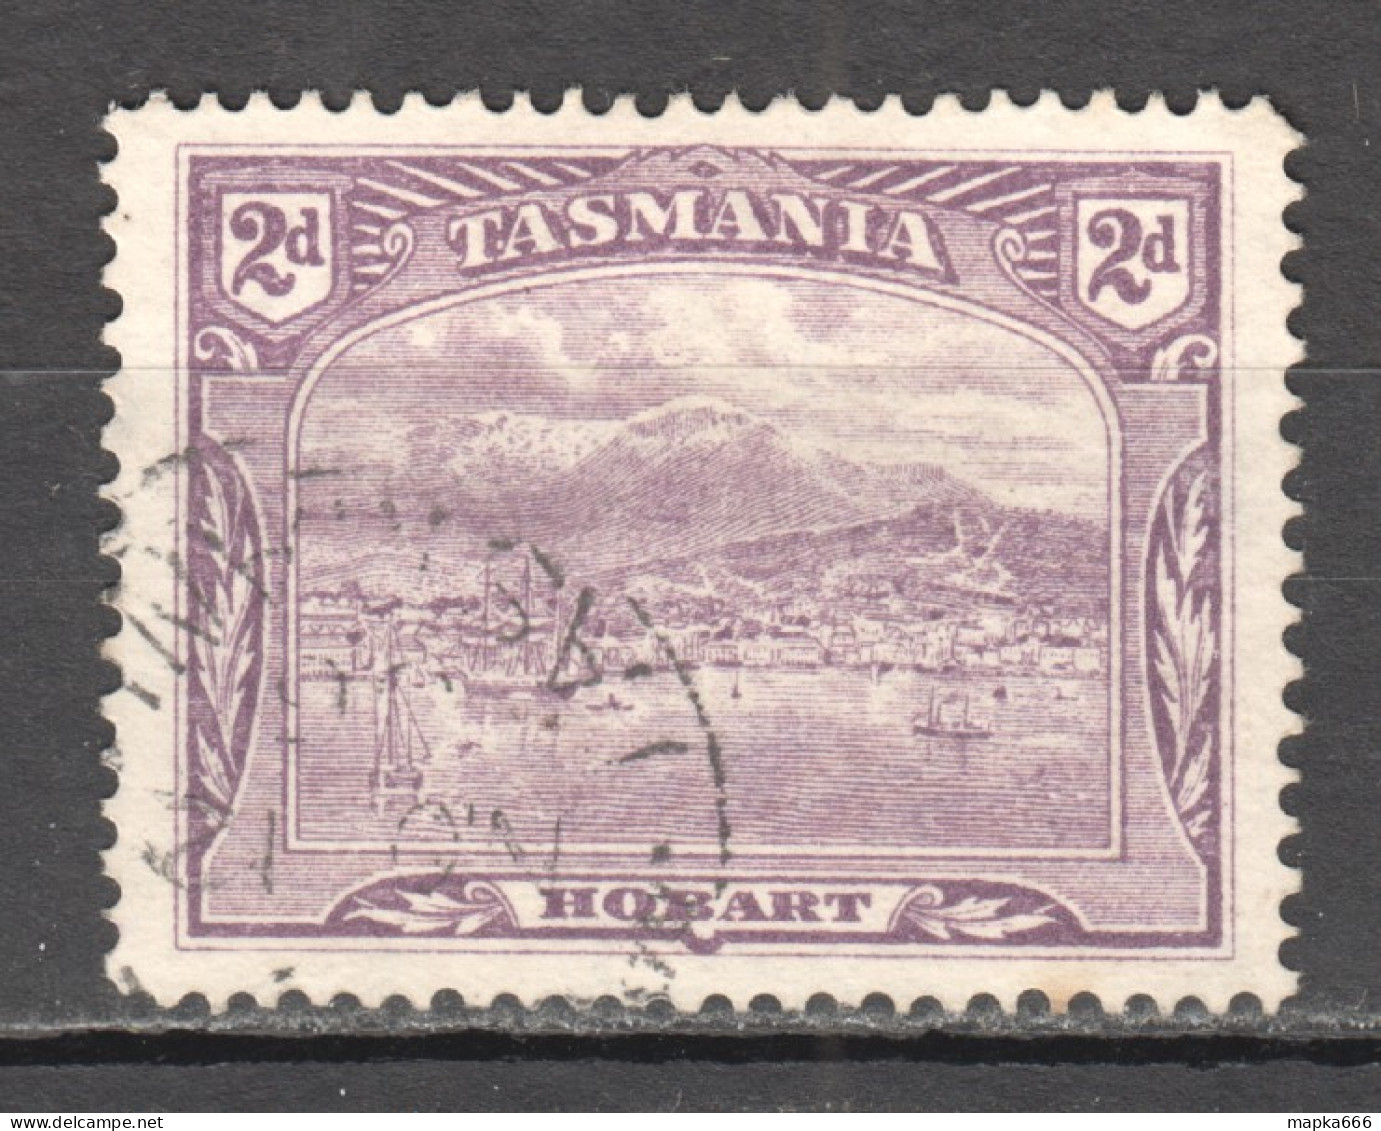 Tas218 1905 Australia Tasmania Gibbons Sg #251 1St Used - Usati